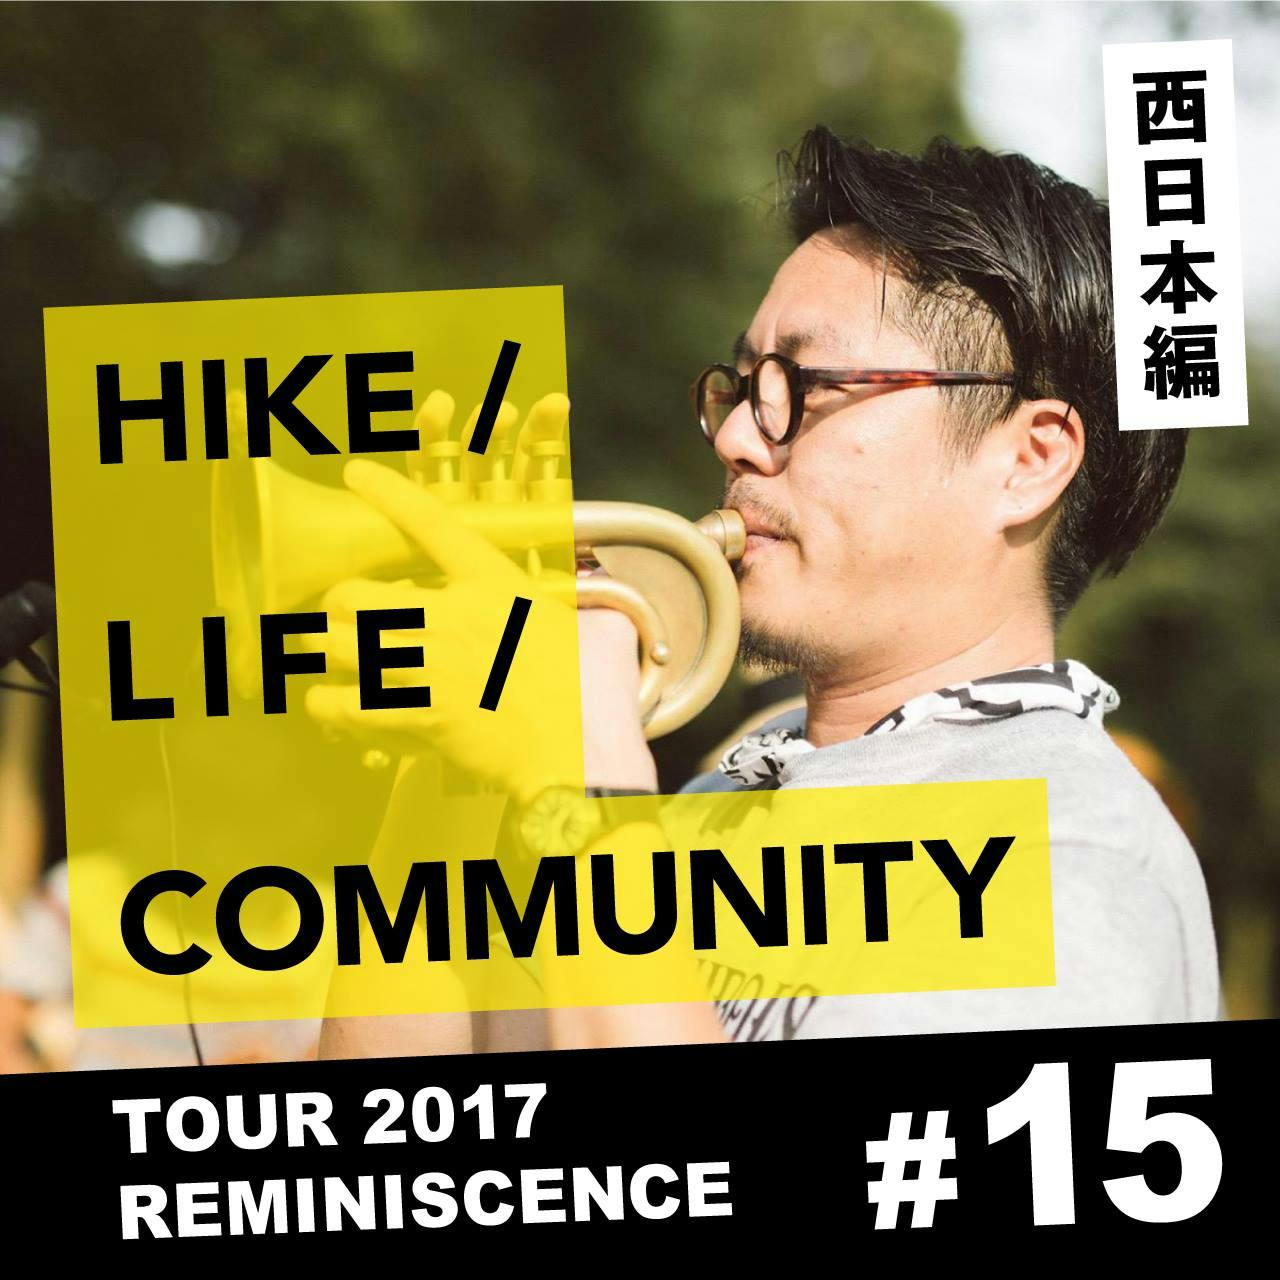 HIKE / LIFE / COMMUNITY TOUR 2017 REMINISCENCE #15 坂口 修一郎